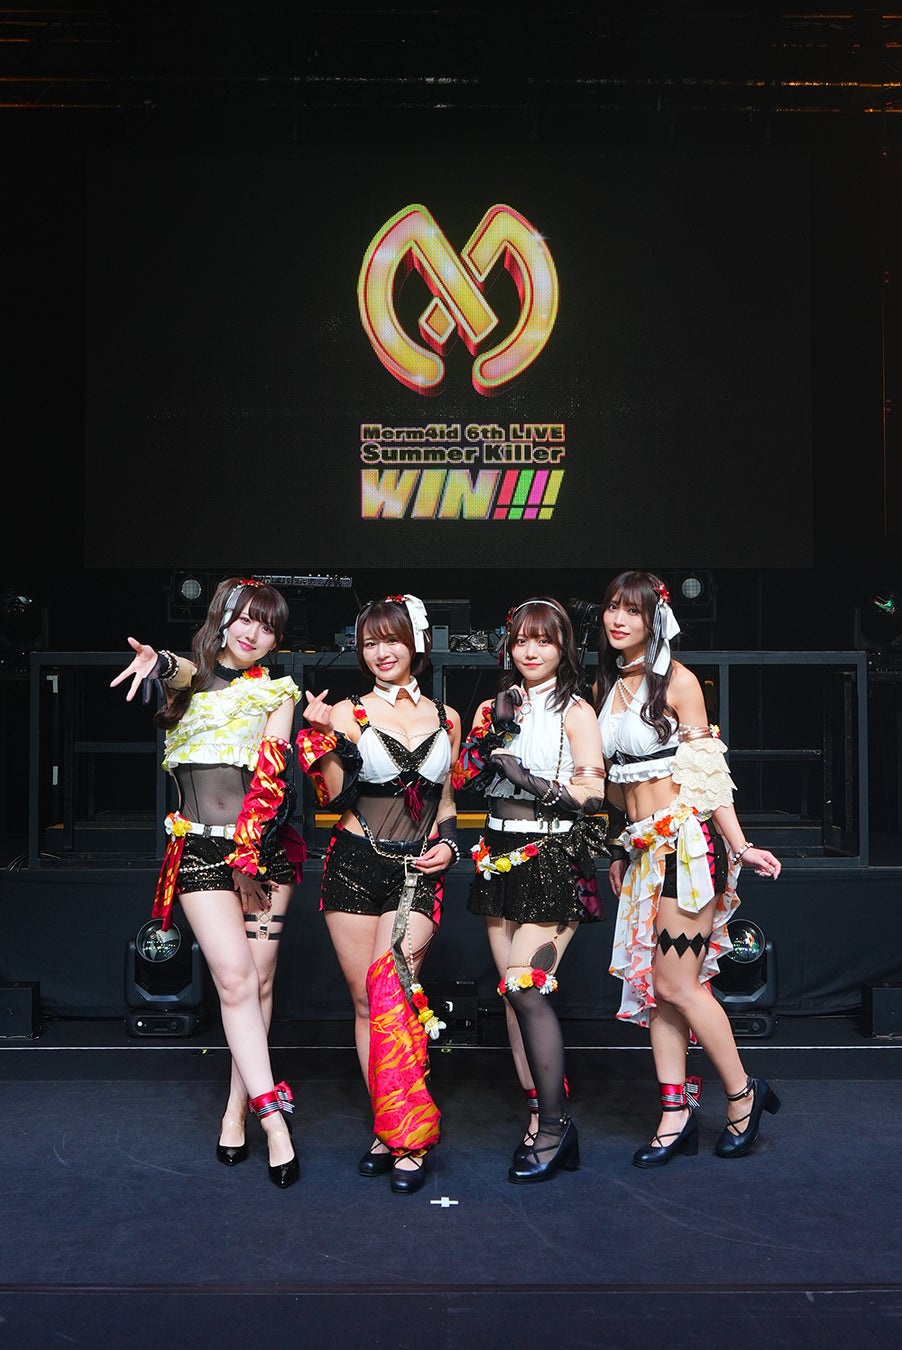 D4DJ、Merm4id 6th LIVE「Summer Killer WIN!!!!」昼公演オフィシャルレポートを公開！